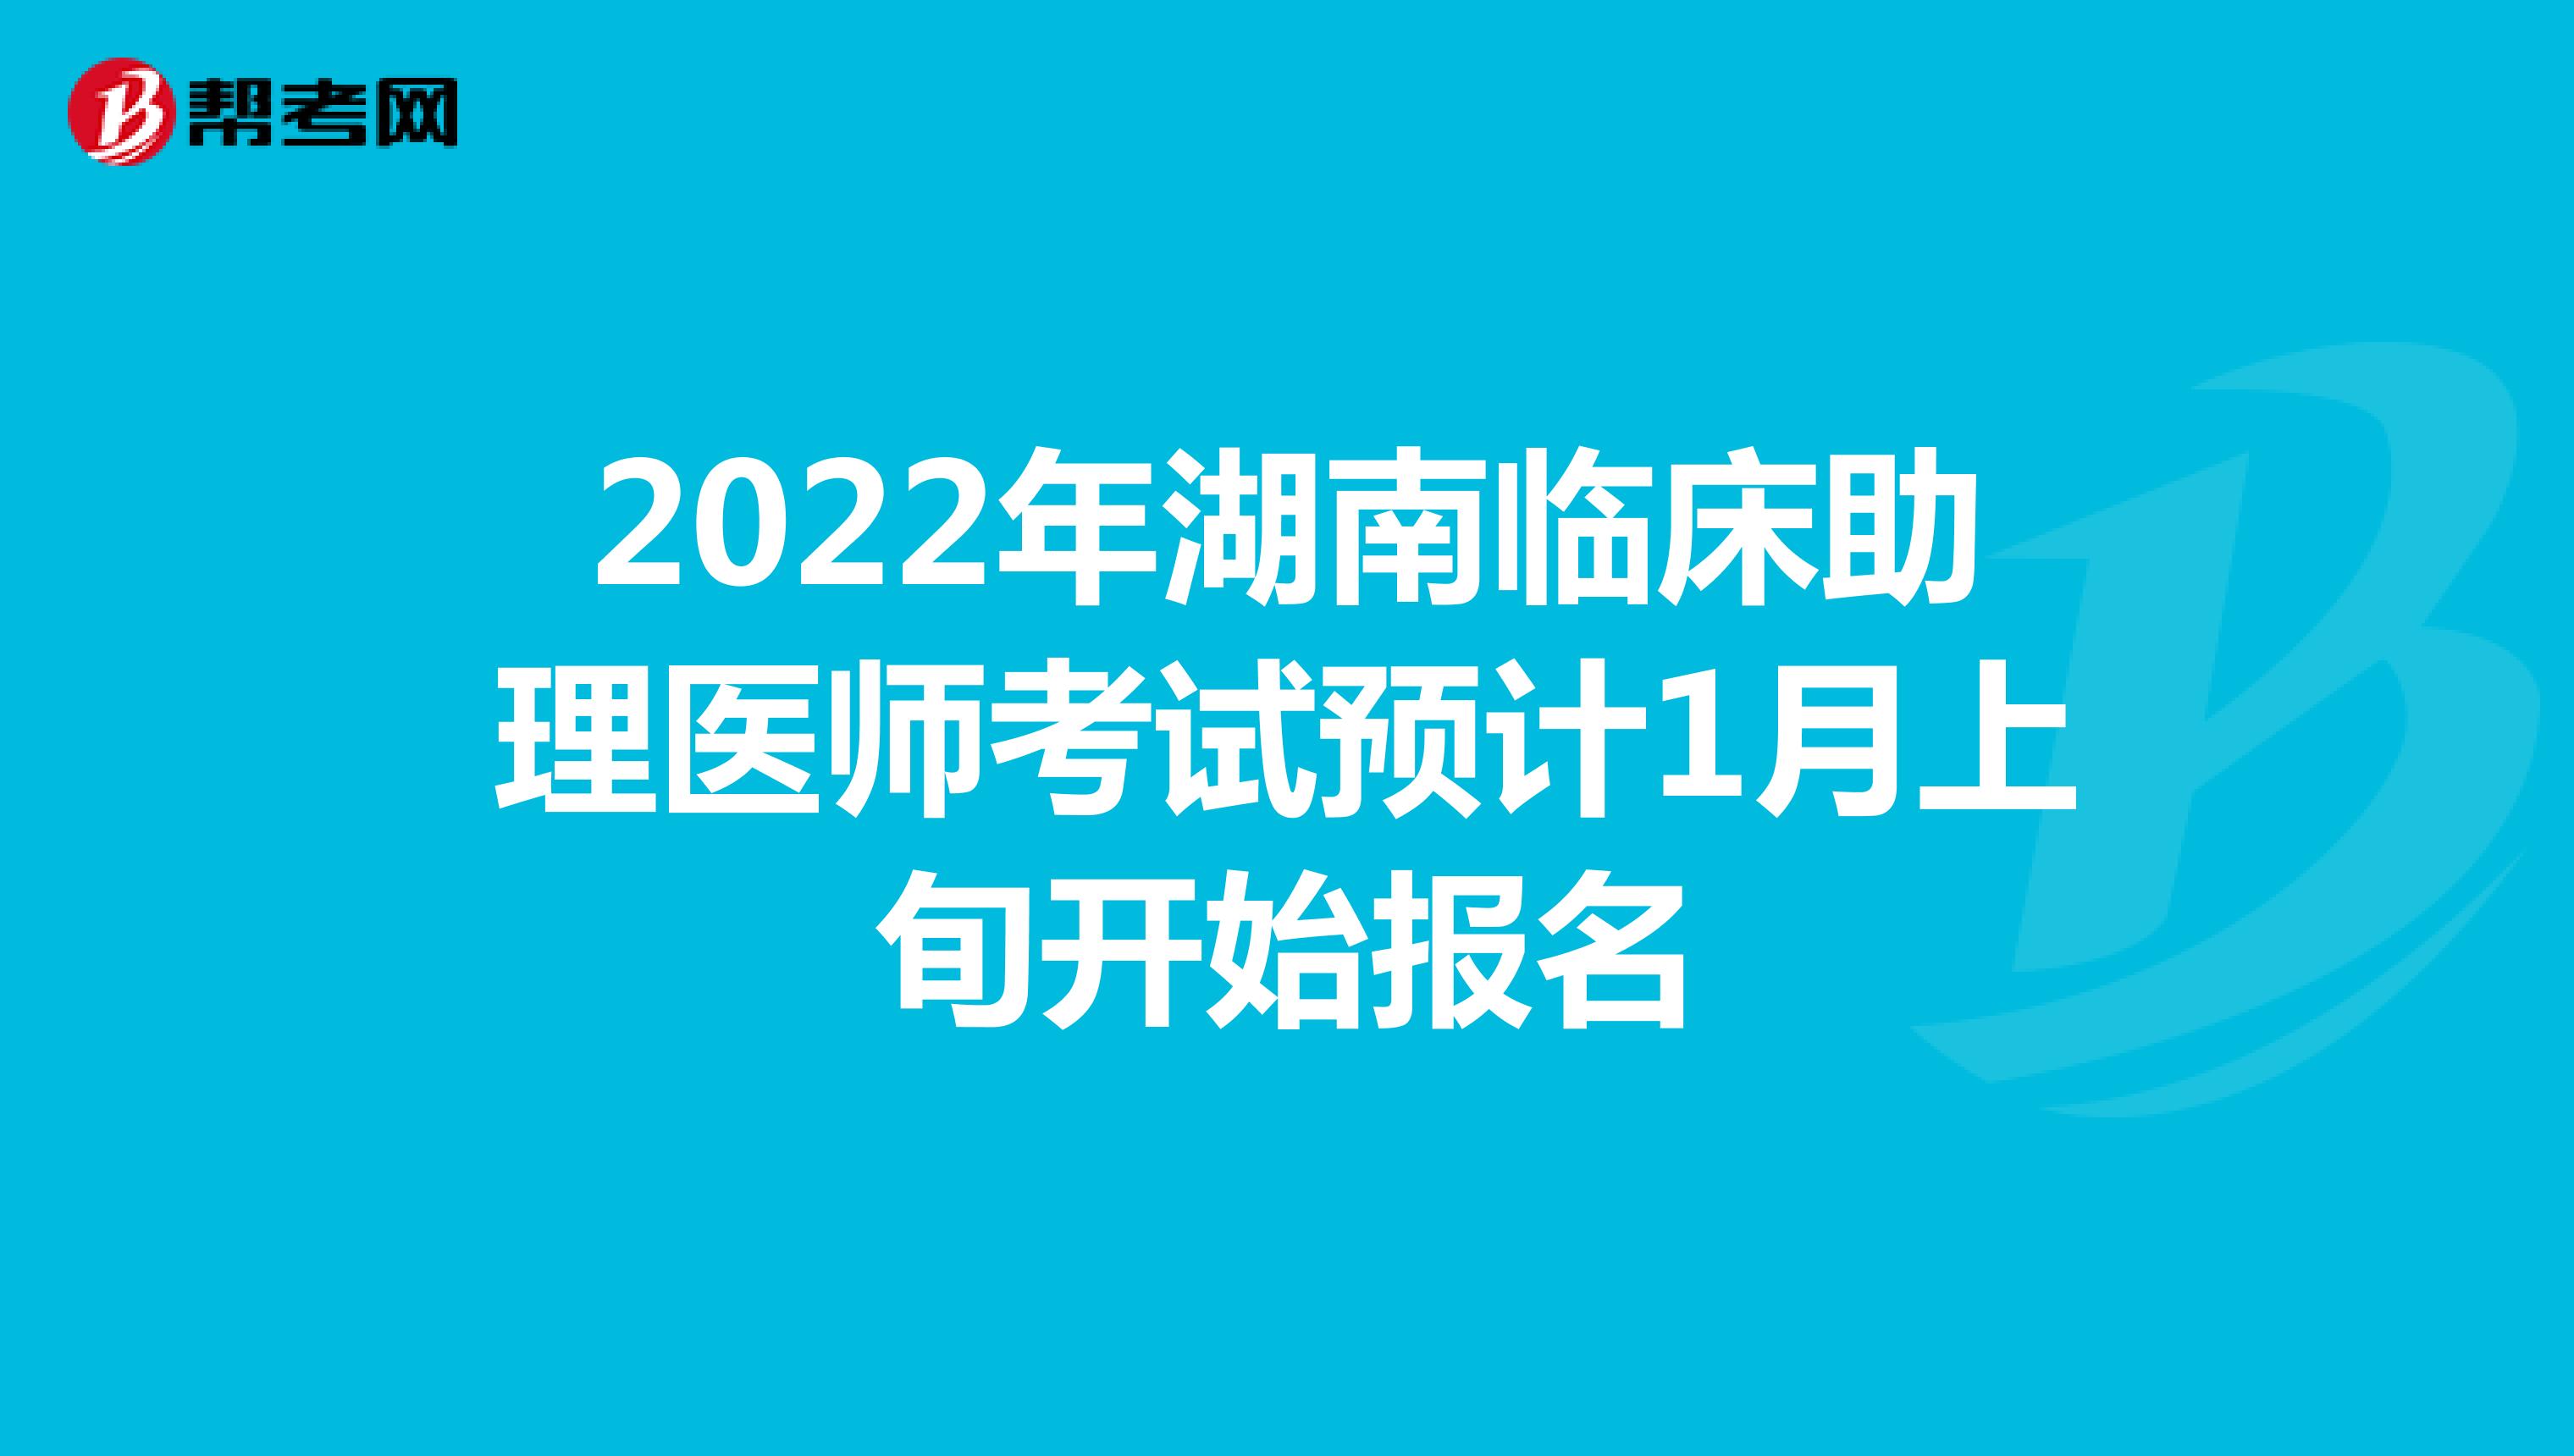 2022年湖南临床助理医师考试预计1月上旬开始报名